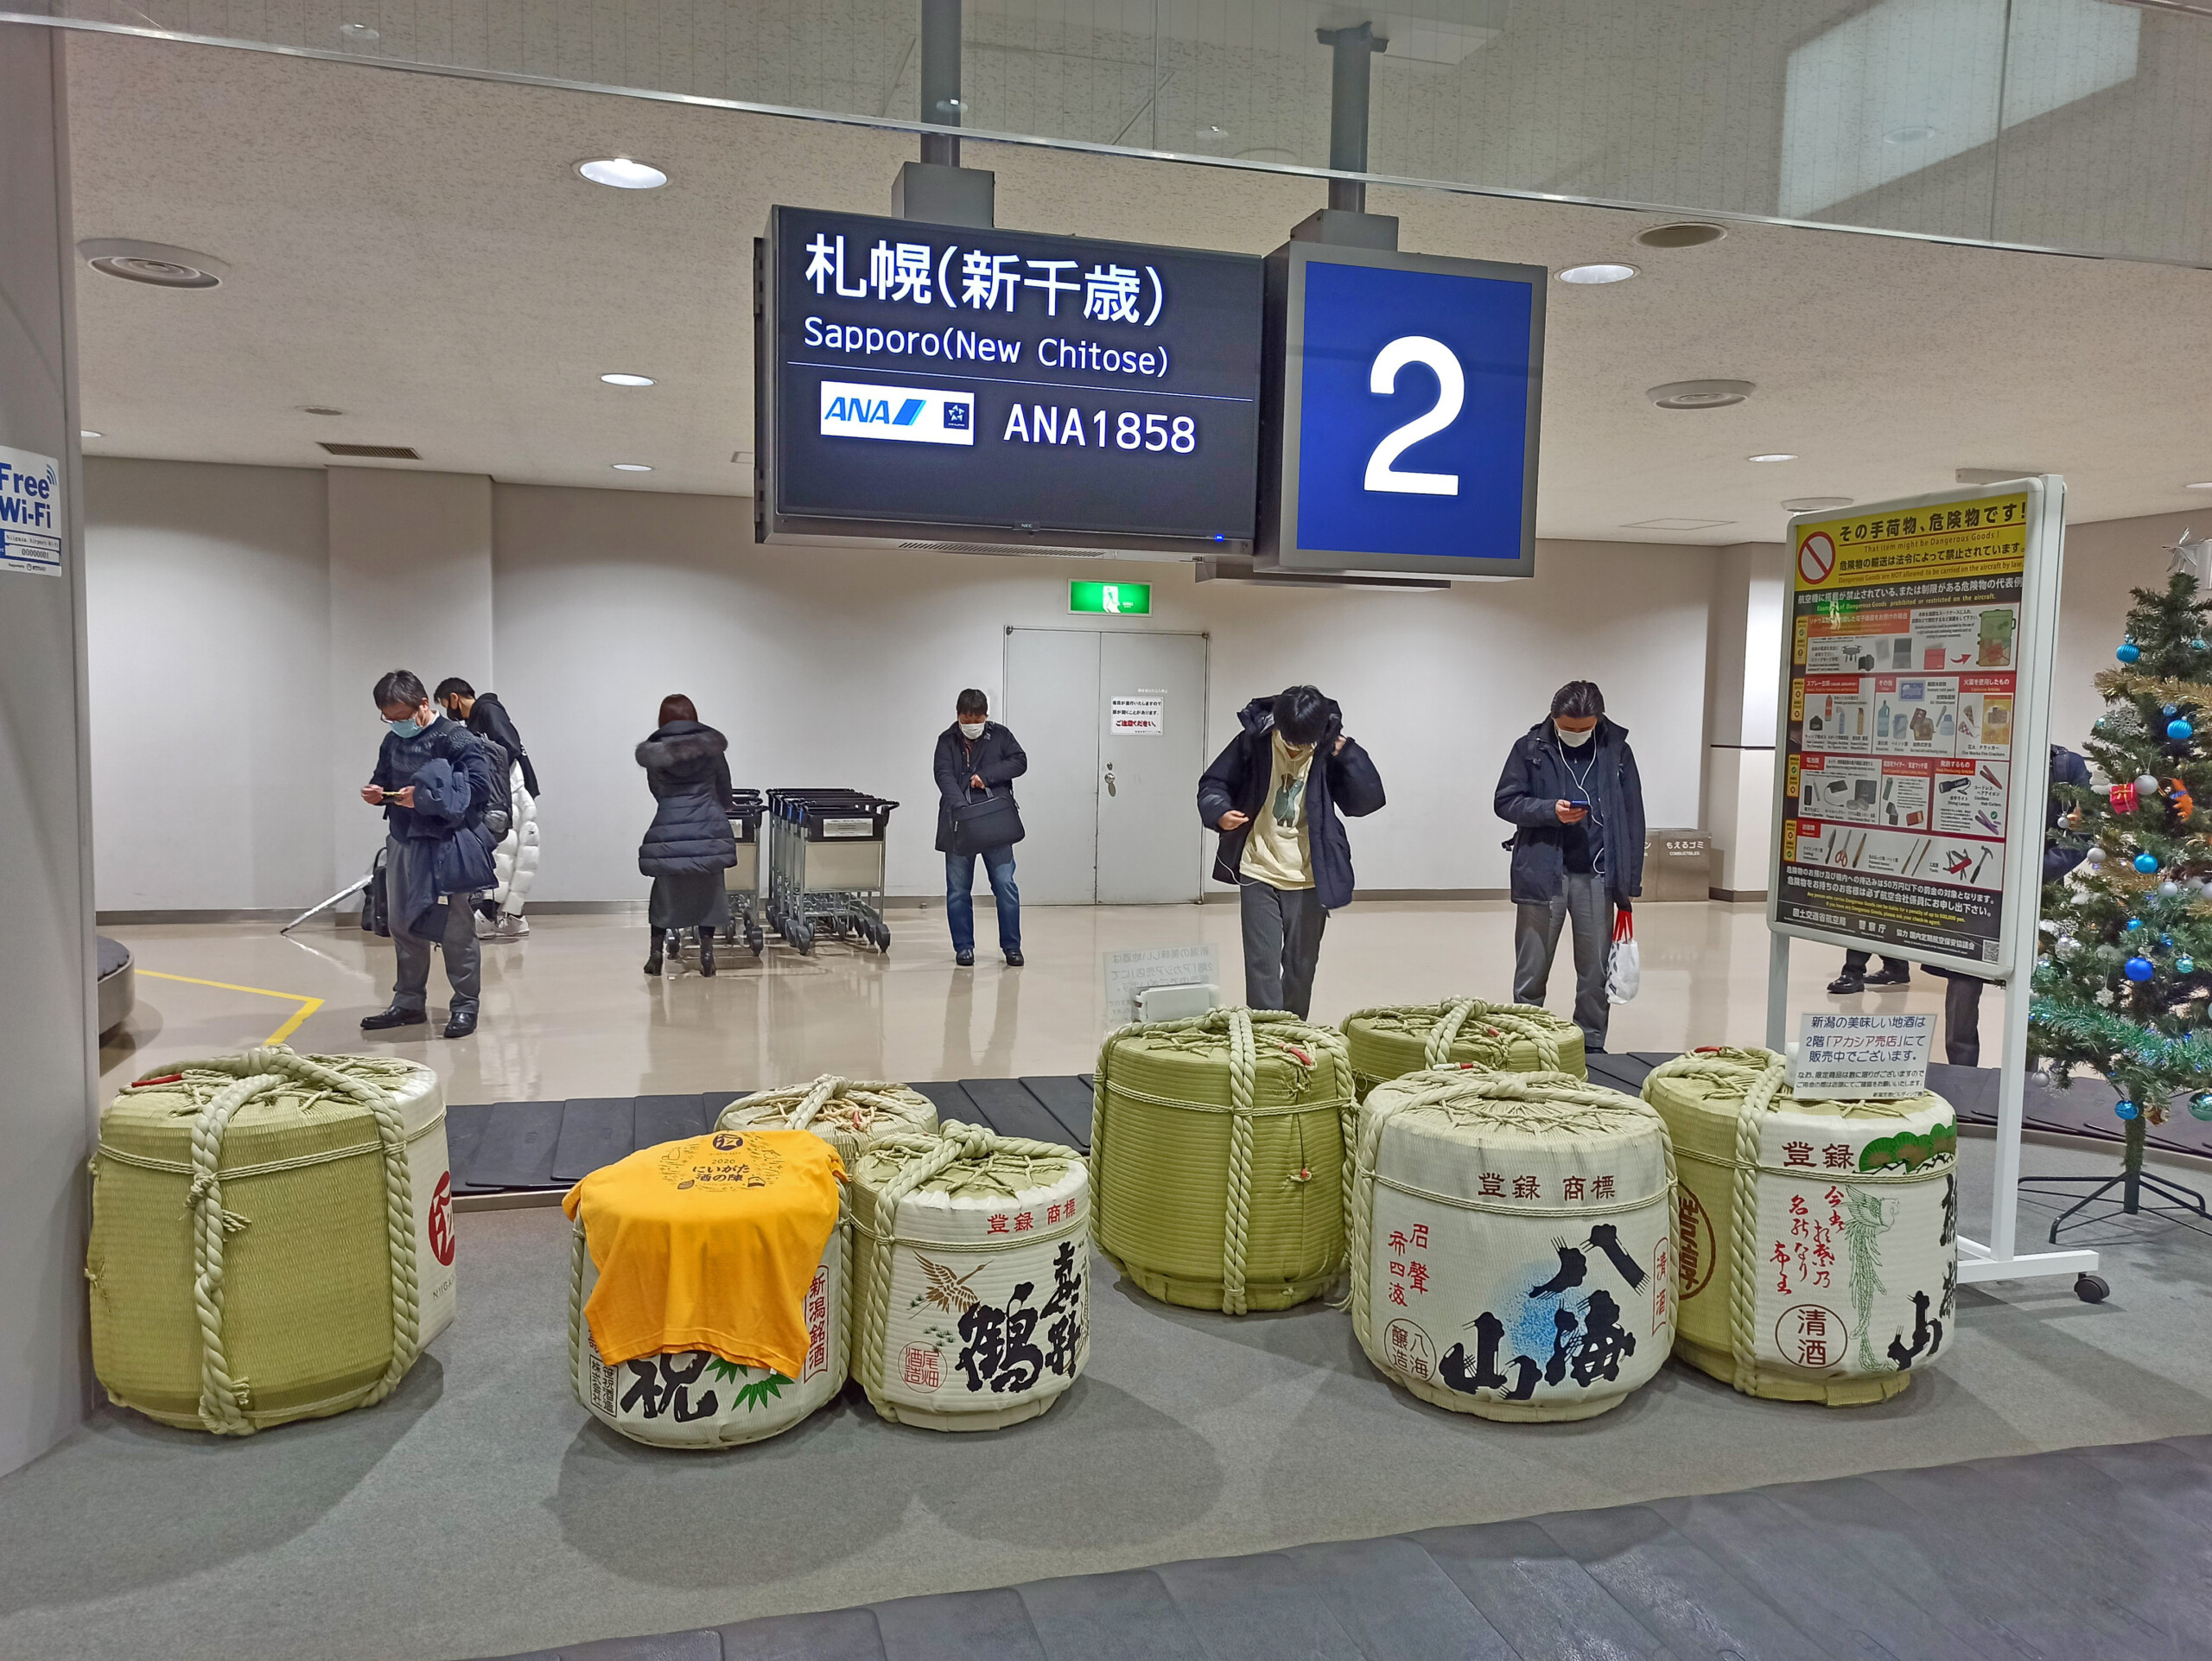 sake barrels Niigata airport baggage claim